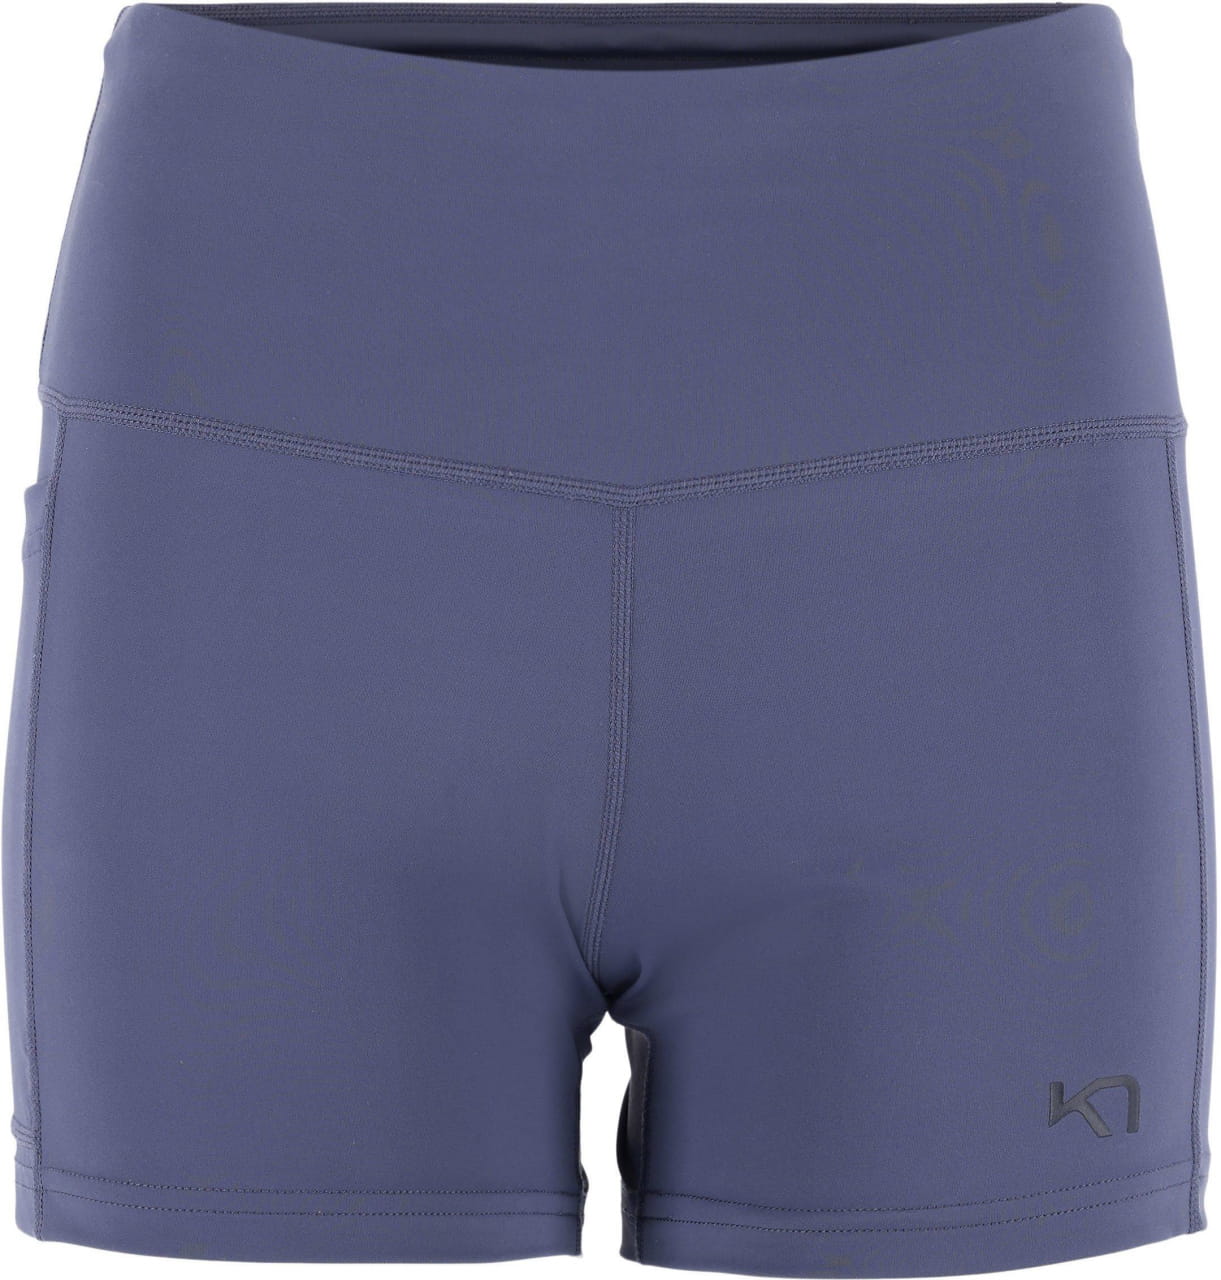 Къси панталони за бягане за жени Kari Traa Vilde Shorts 3In